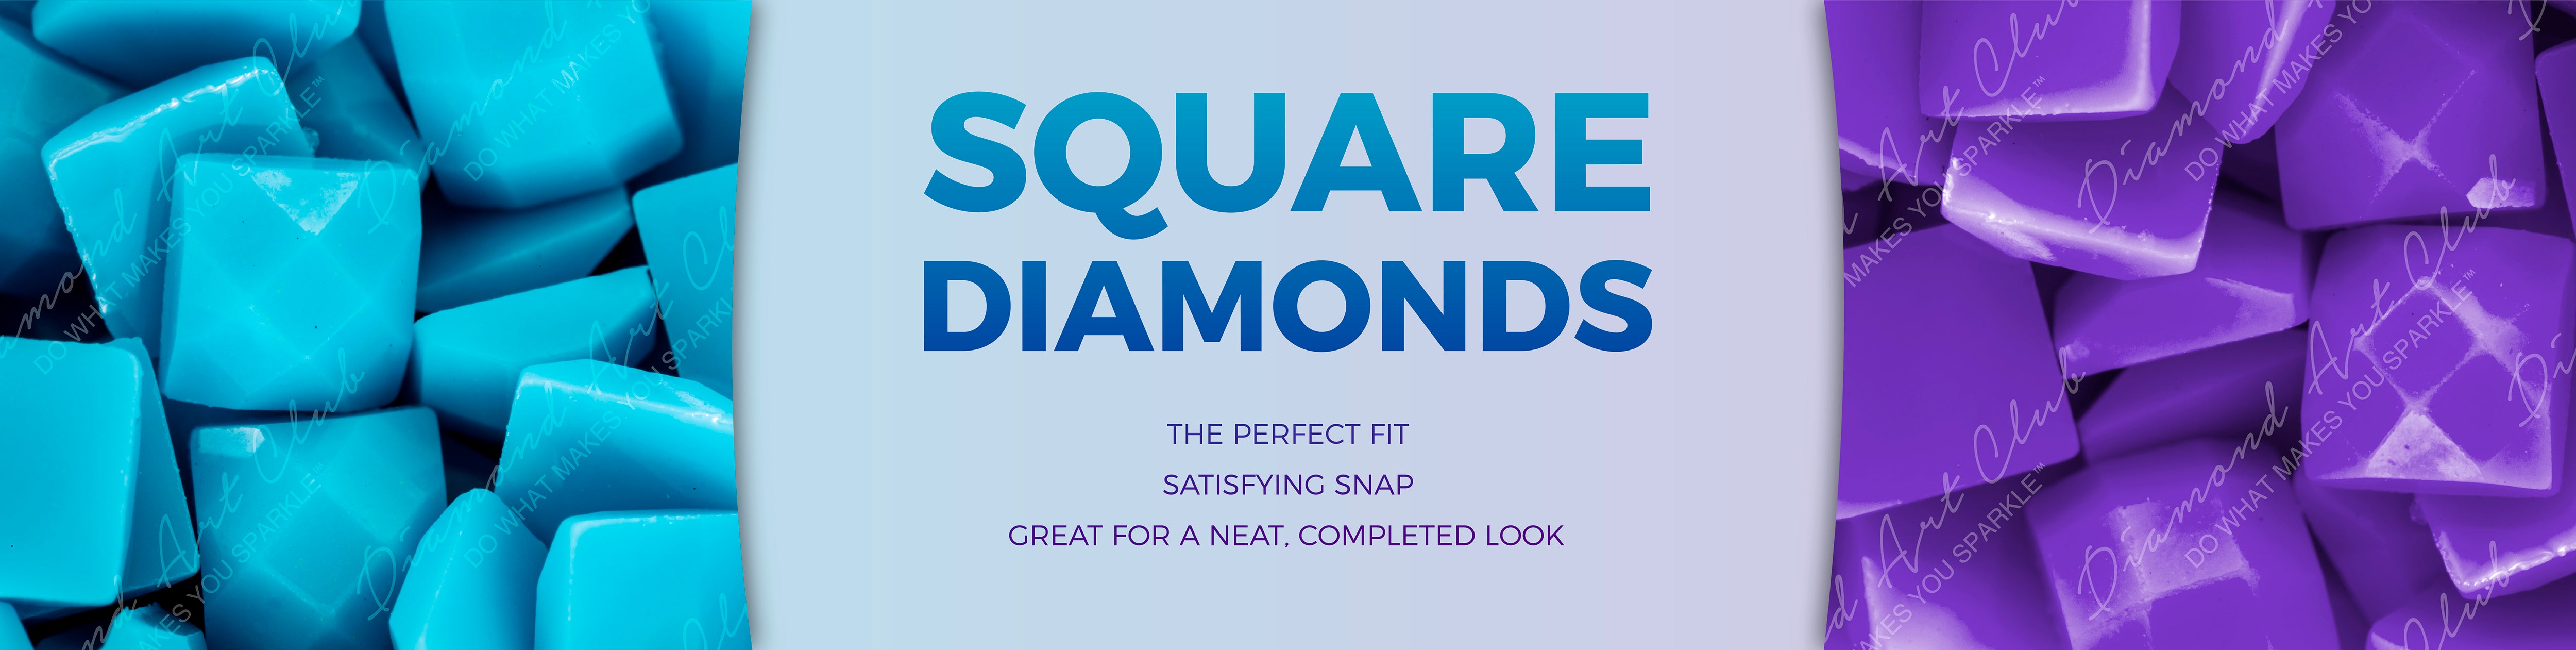 square diamond graphic